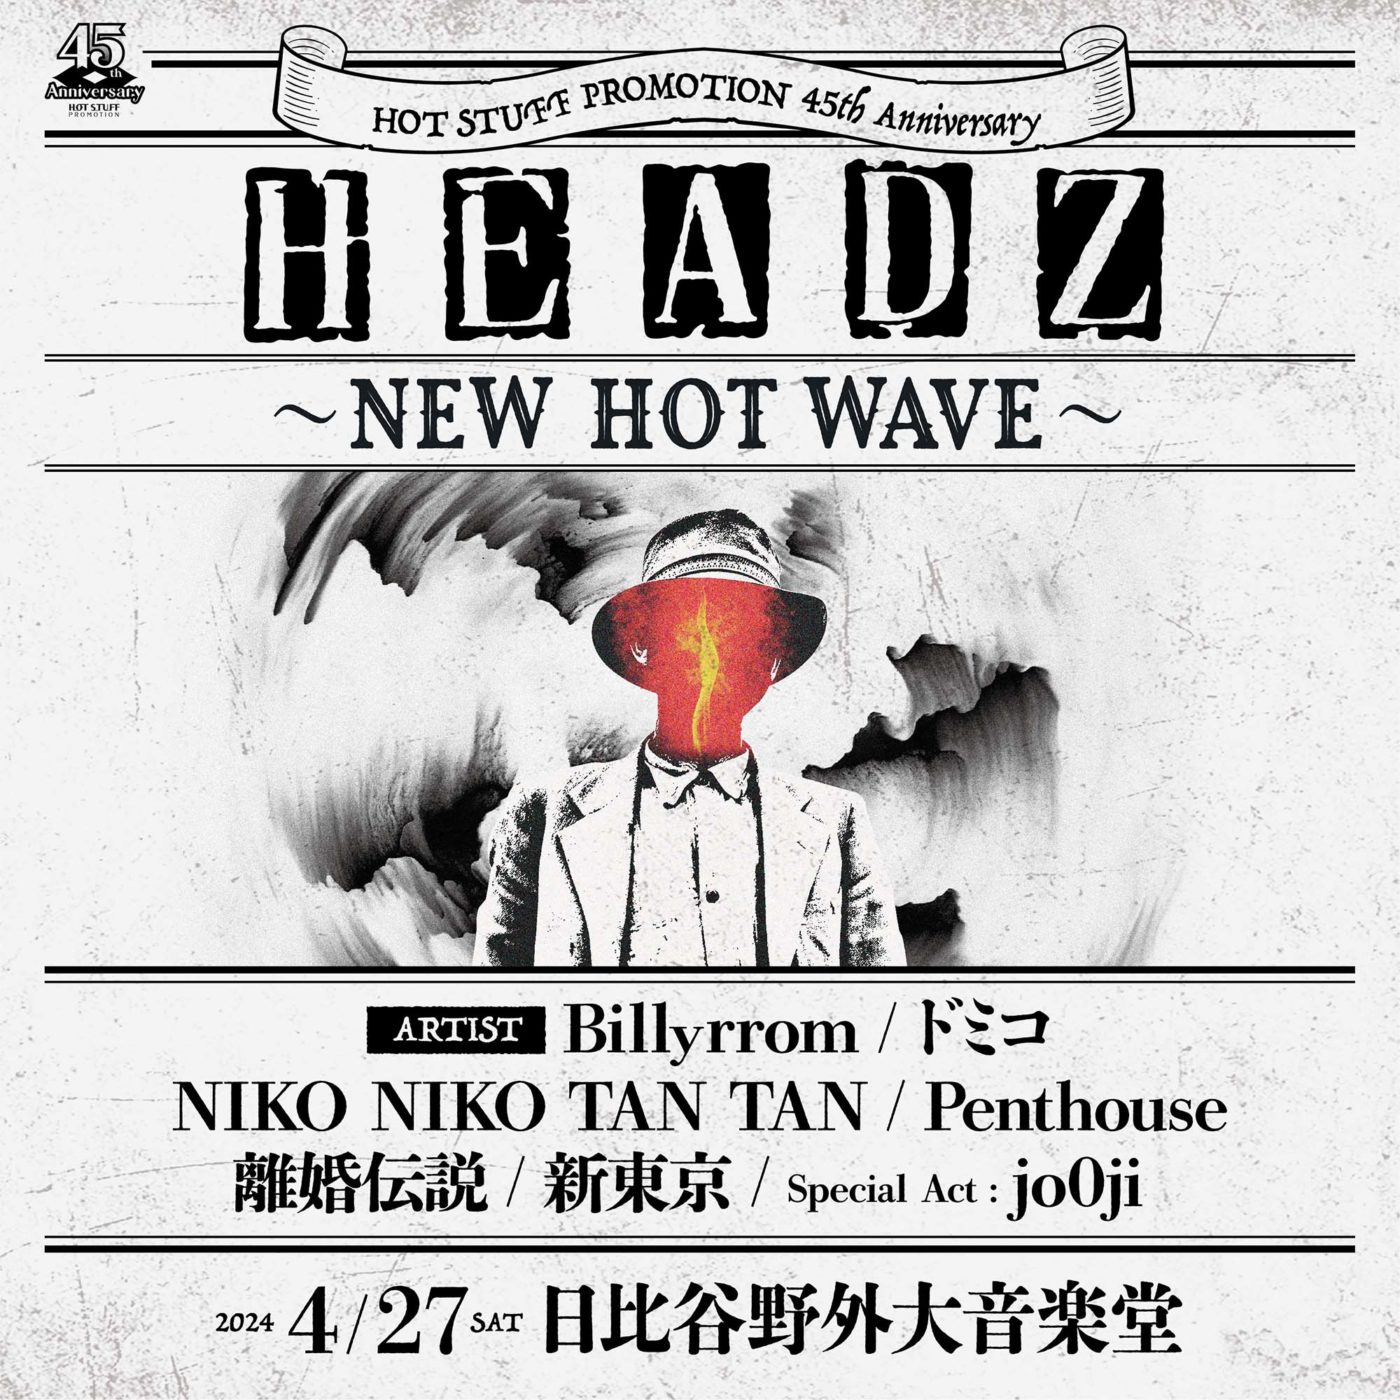 4月27日(土)HOT STUFF 45th Anniversary HEADZ 〜NEW HOT WAVE〜 at 日比谷野外大音楽堂